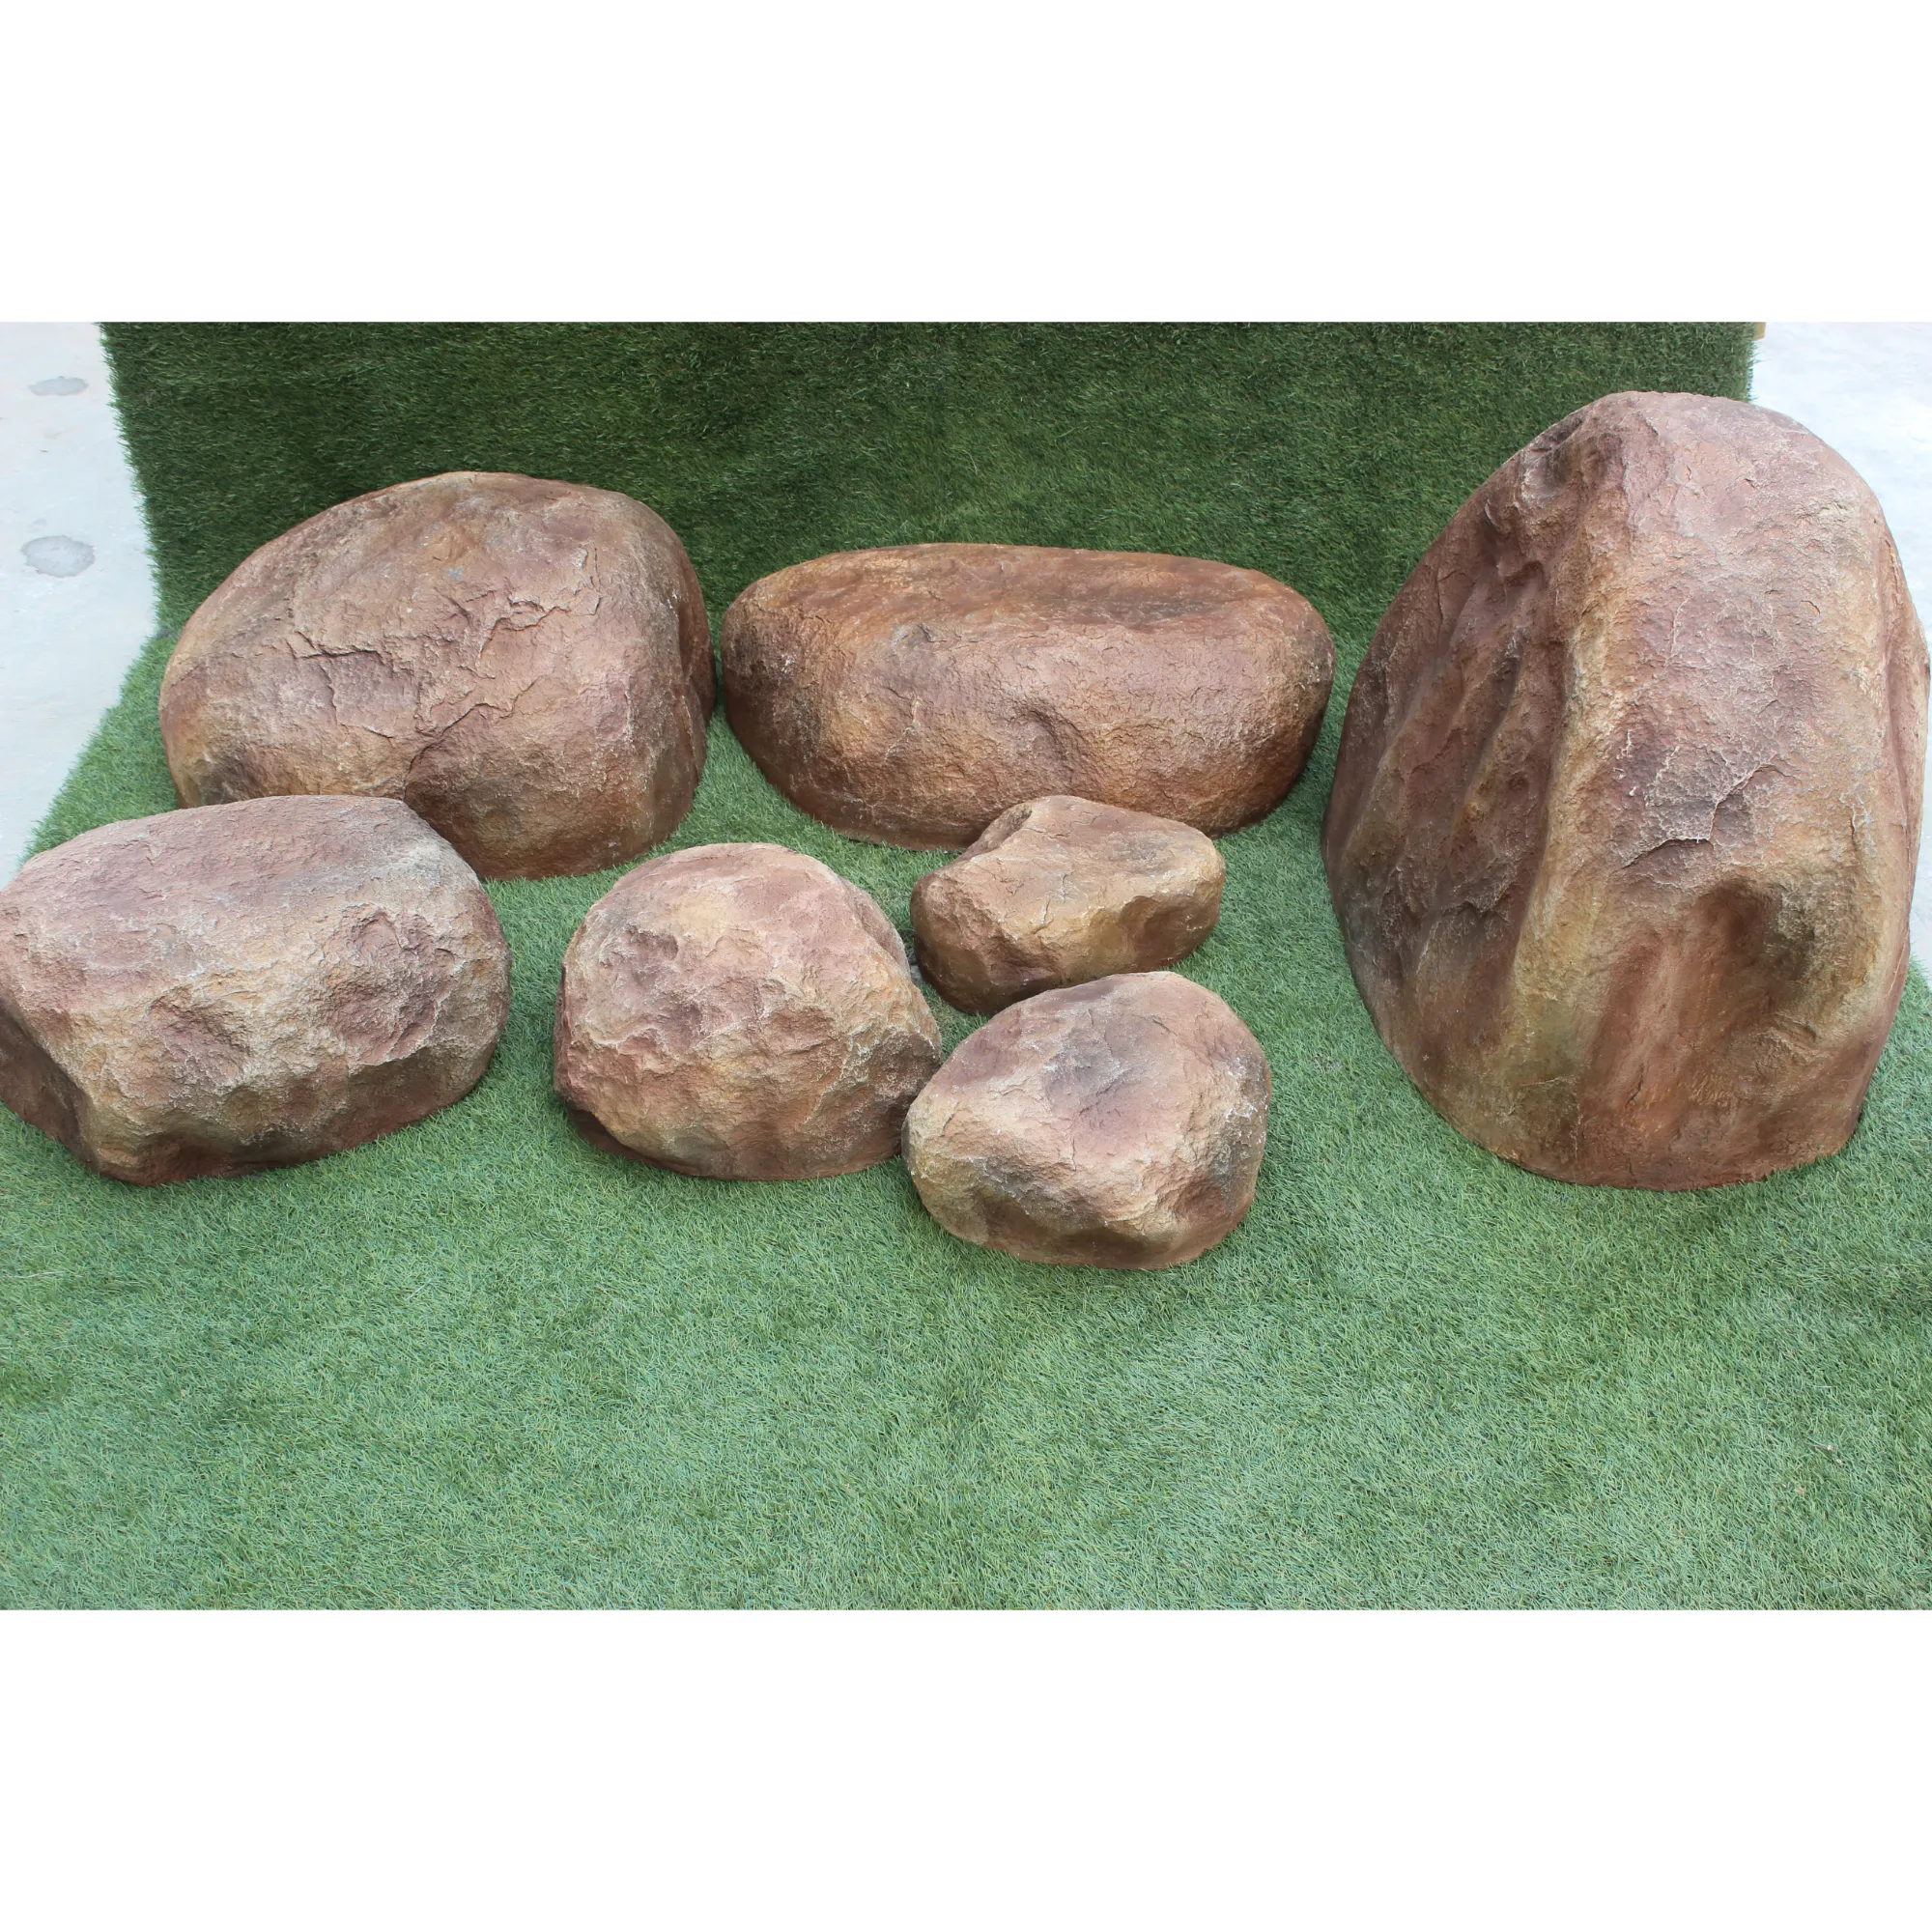 Piedras de granito klt para paisajismo, Piedras decorativas pulidas para jardín, venta al por mayor